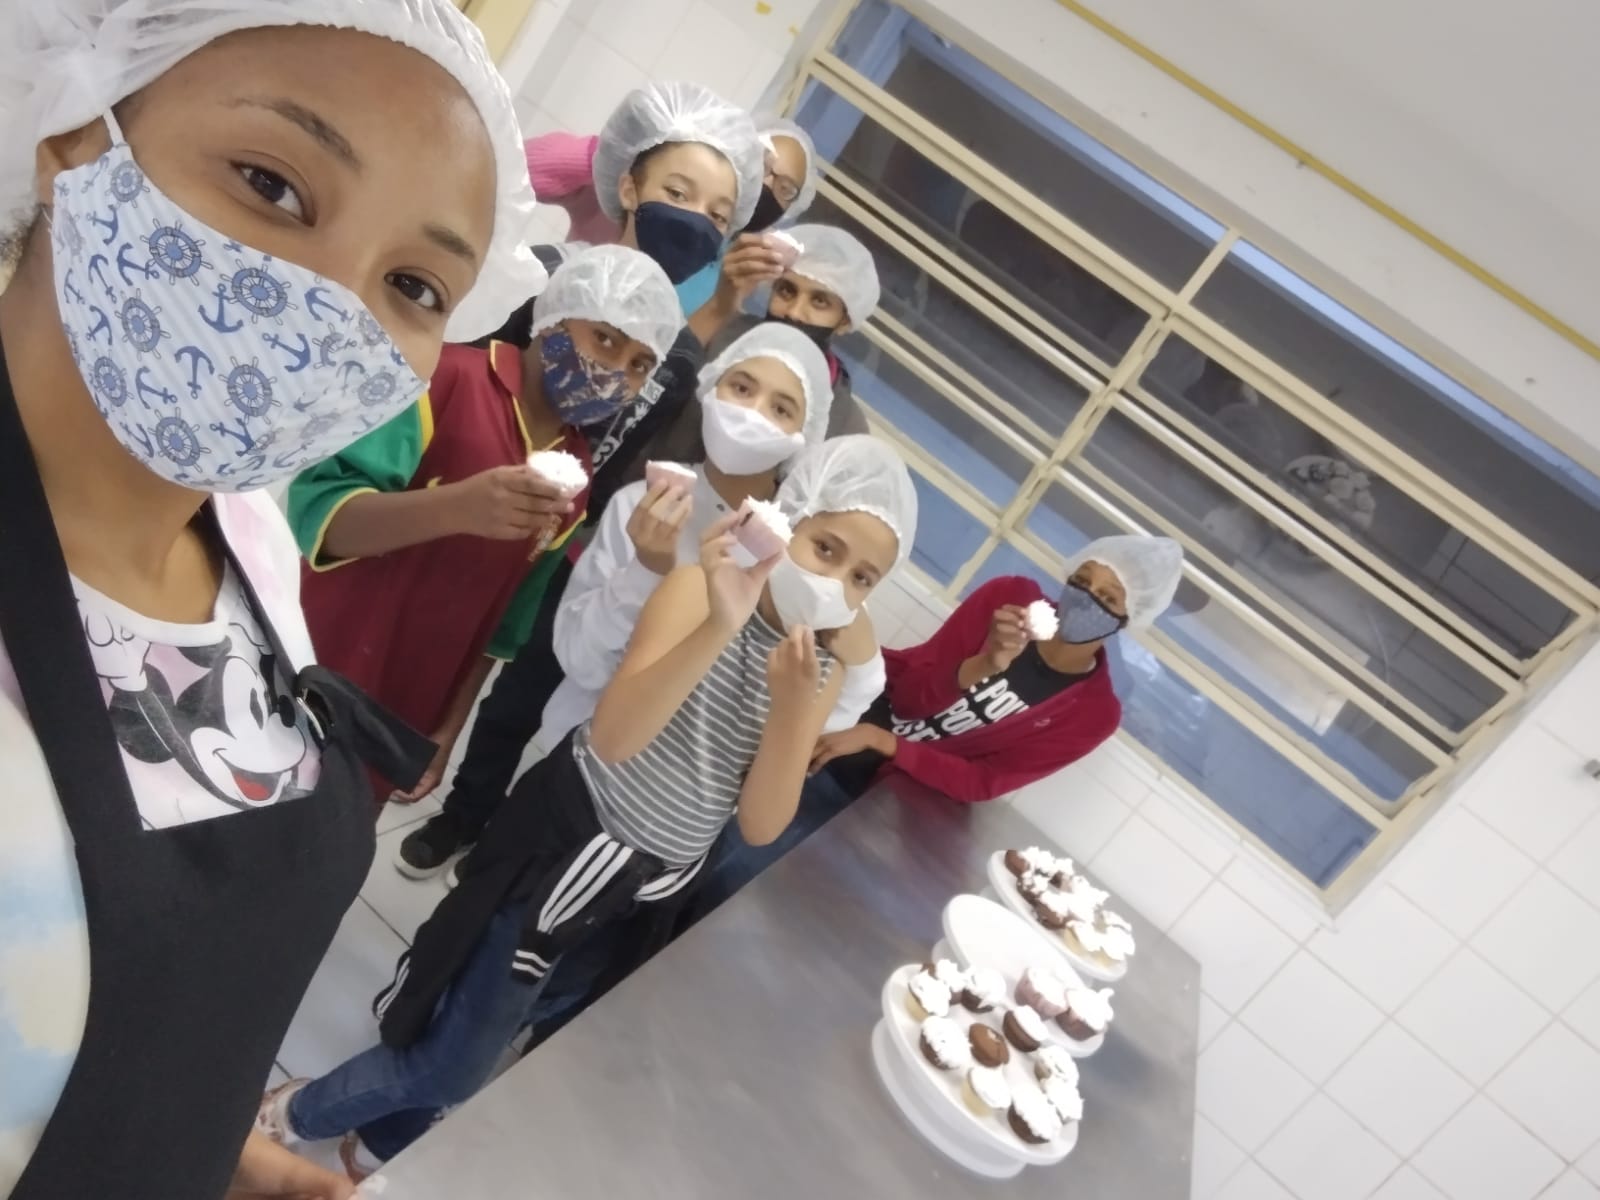 Foto tirada pela classe com todos segurando os bolinhos logo após a conclusão completa dos mesmos, todos utilizando máscaras.